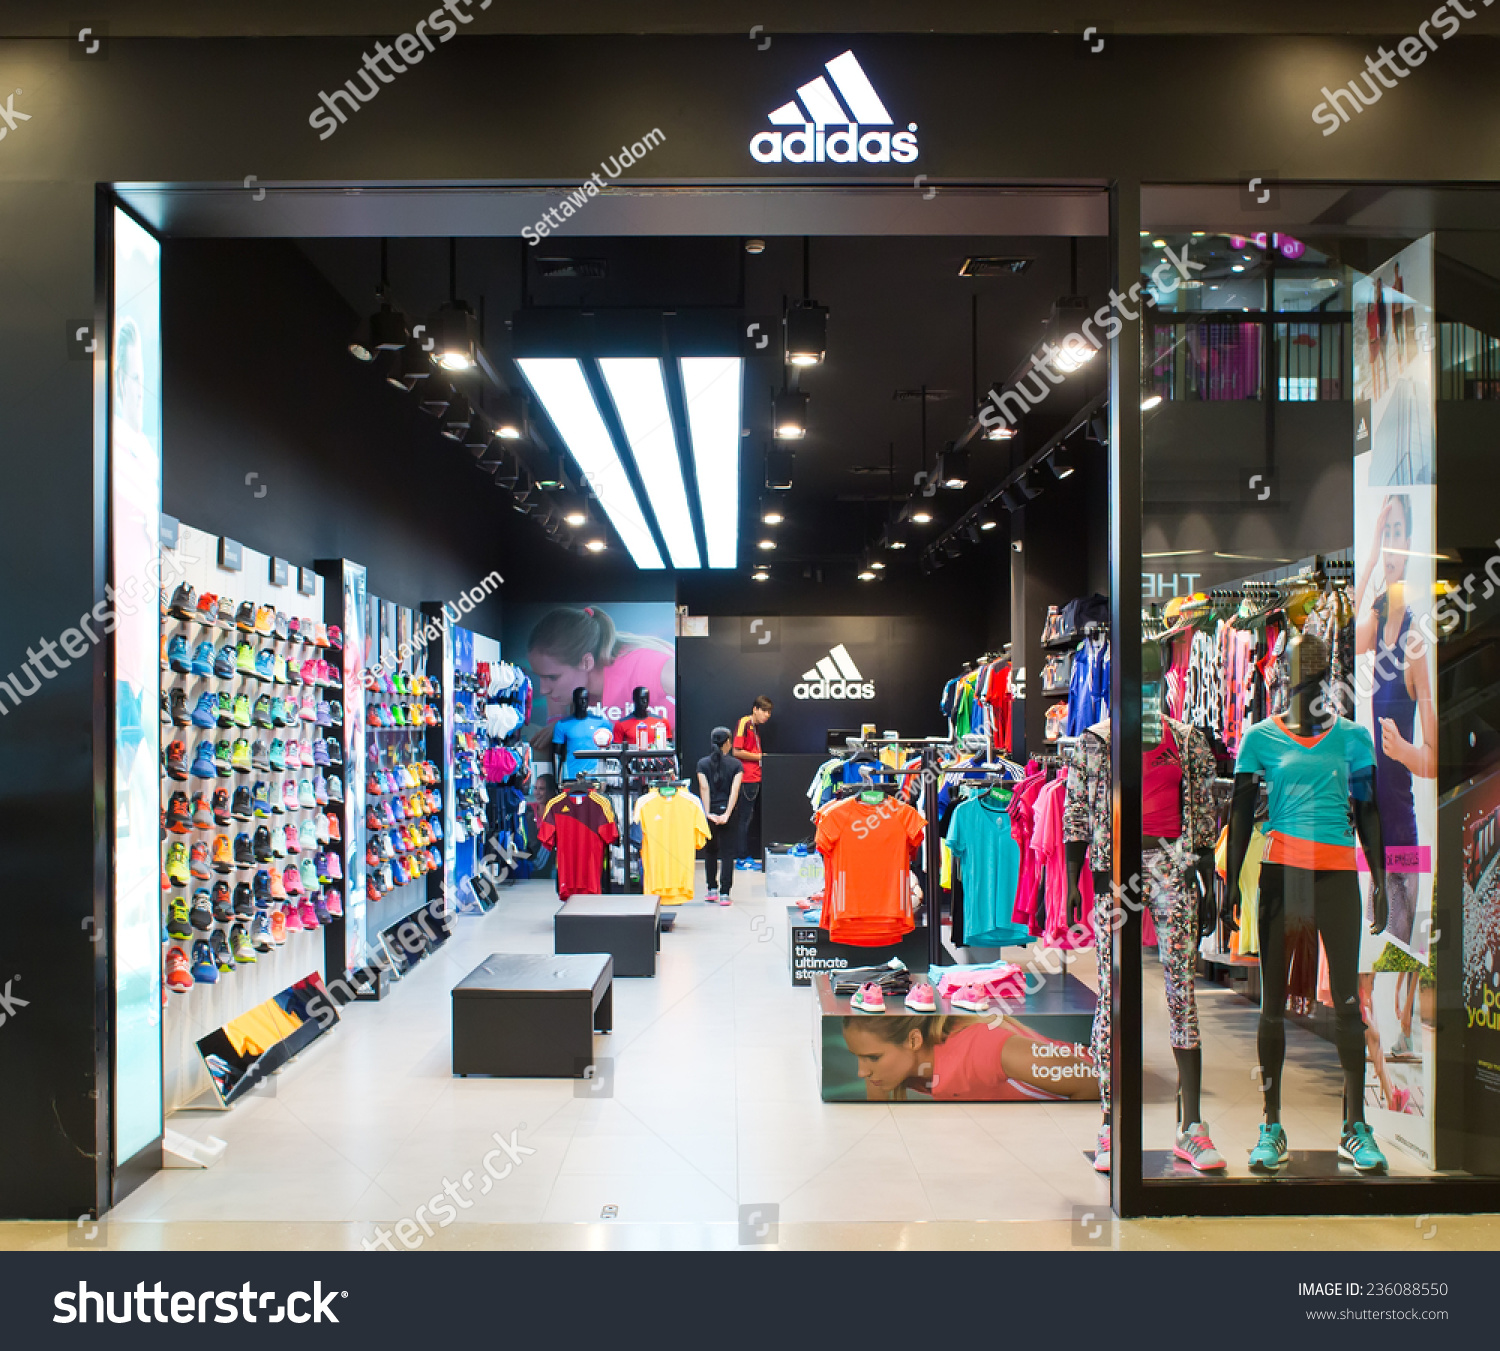 salomon suspect 2 009 - Adidas Stock Photos, Images, \u0026amp; Pictures | Shutterstock